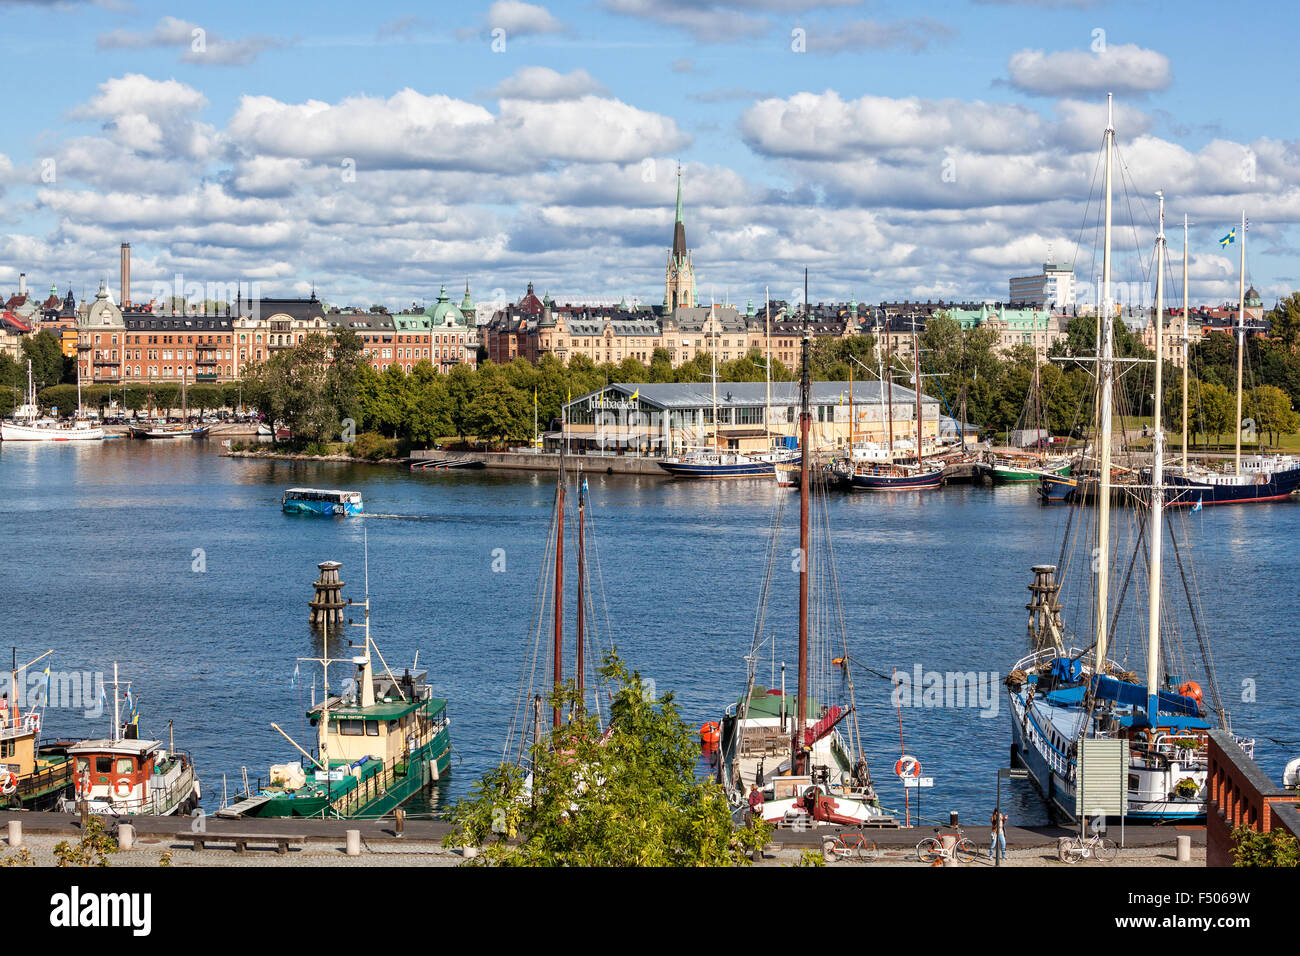 Die Stadt auf dem Wasser, Stockholm Kollektion Stockfoto